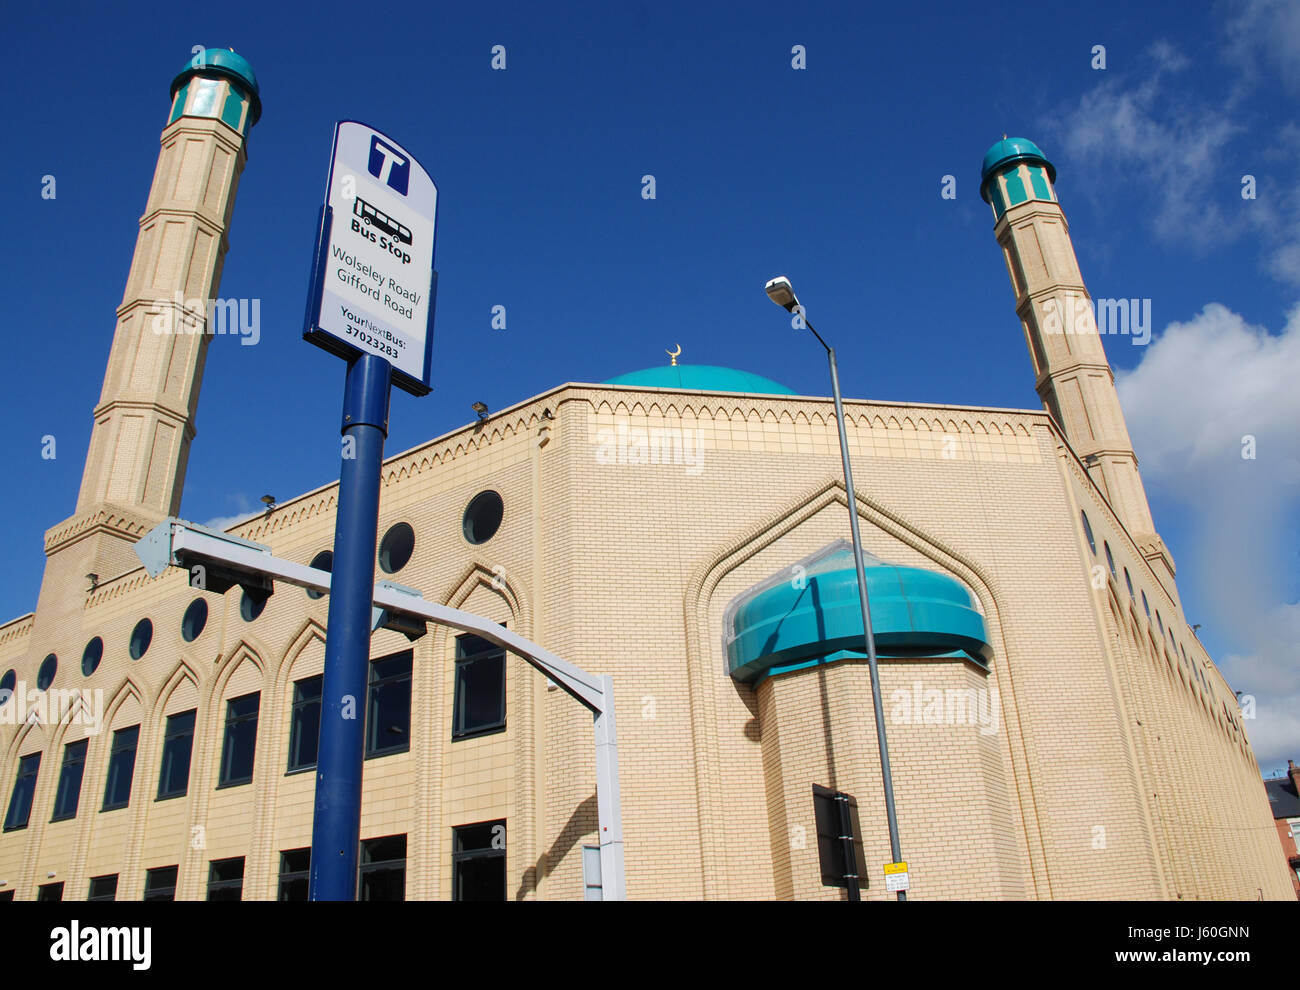 L'islam religion culte musulman mosquée ciel nuages ciel religion religieux Banque D'Images